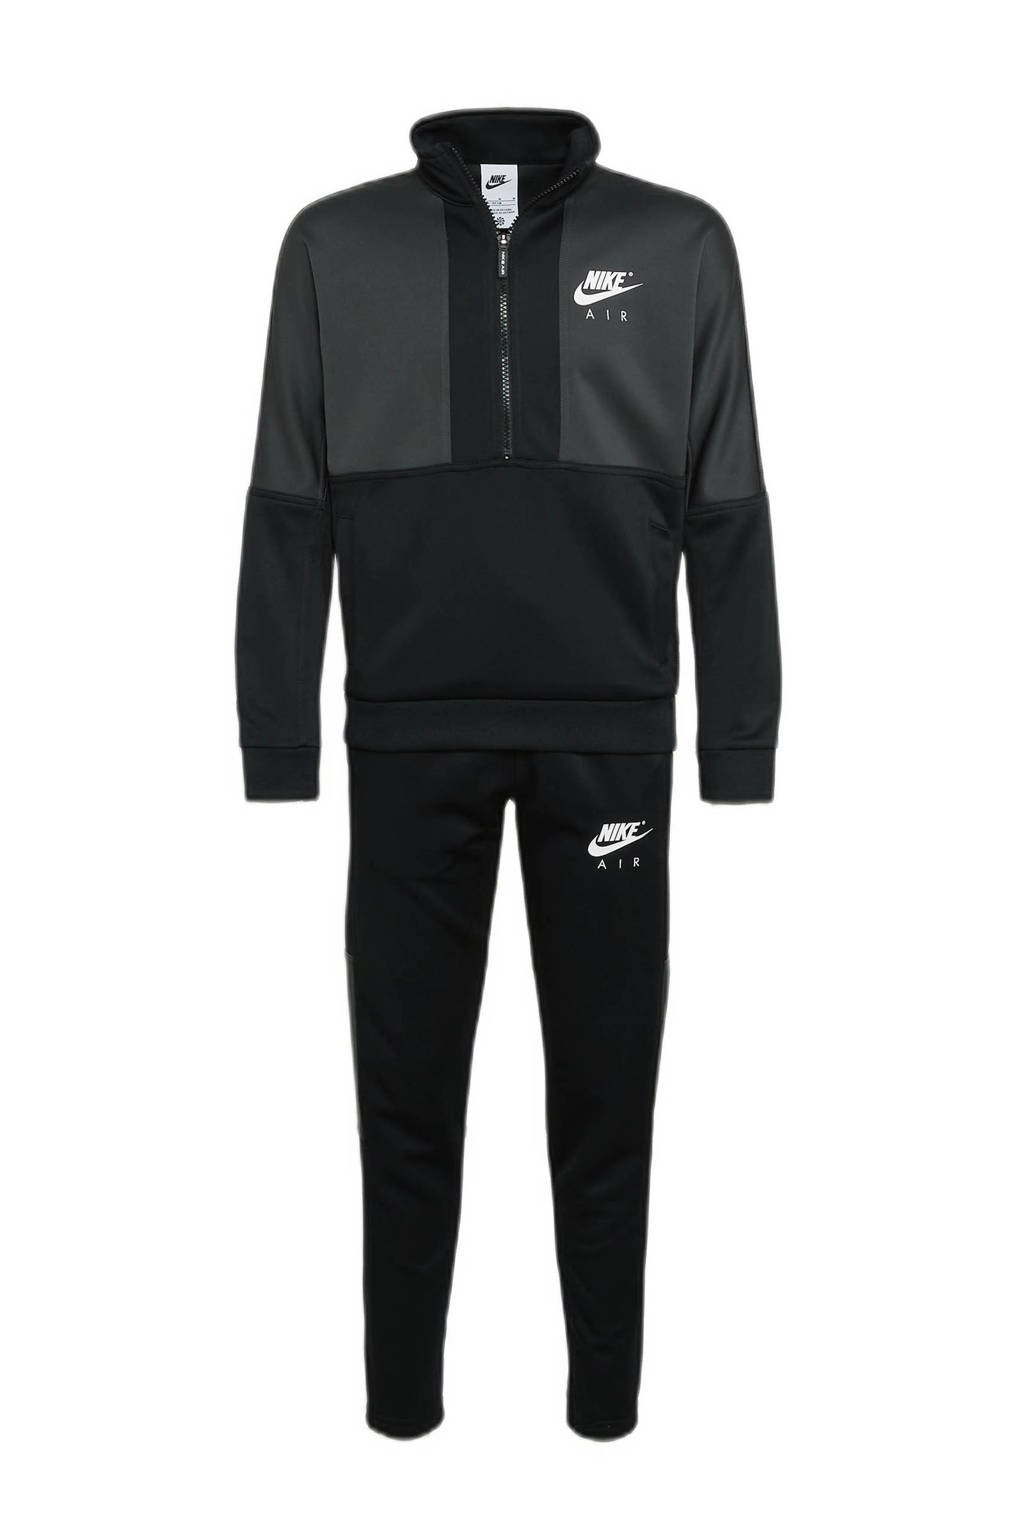 Nike   trainingspak zwart/grijs, Zwart/grijs